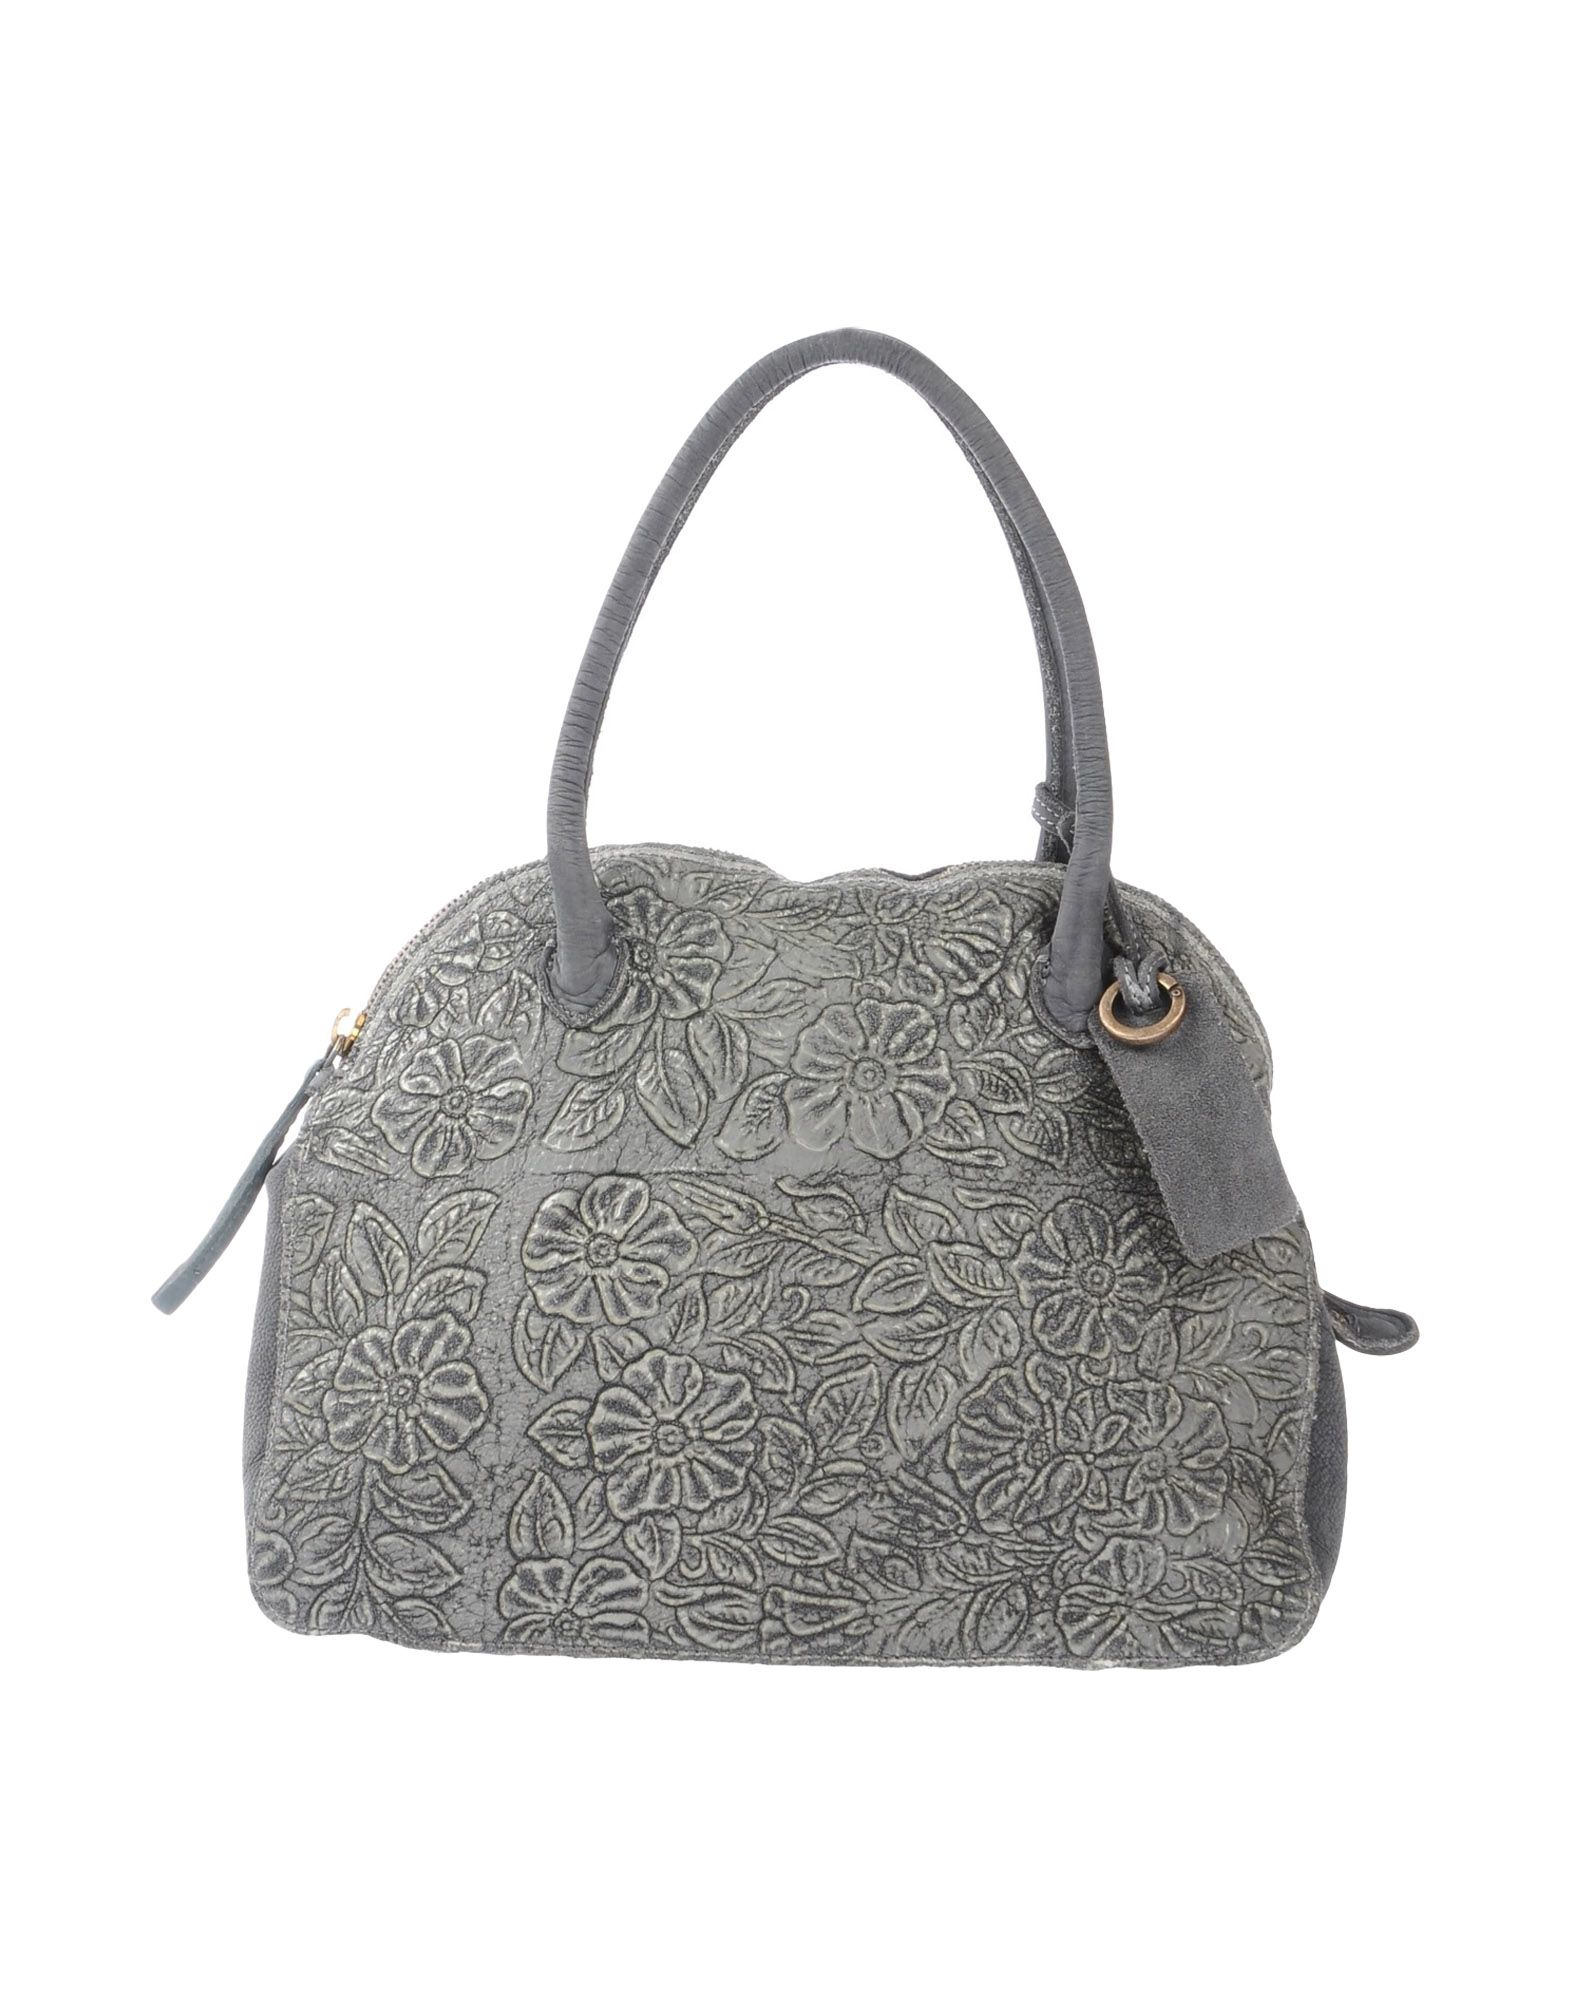 Lyst - Caterina Lucchi Handbag in Gray